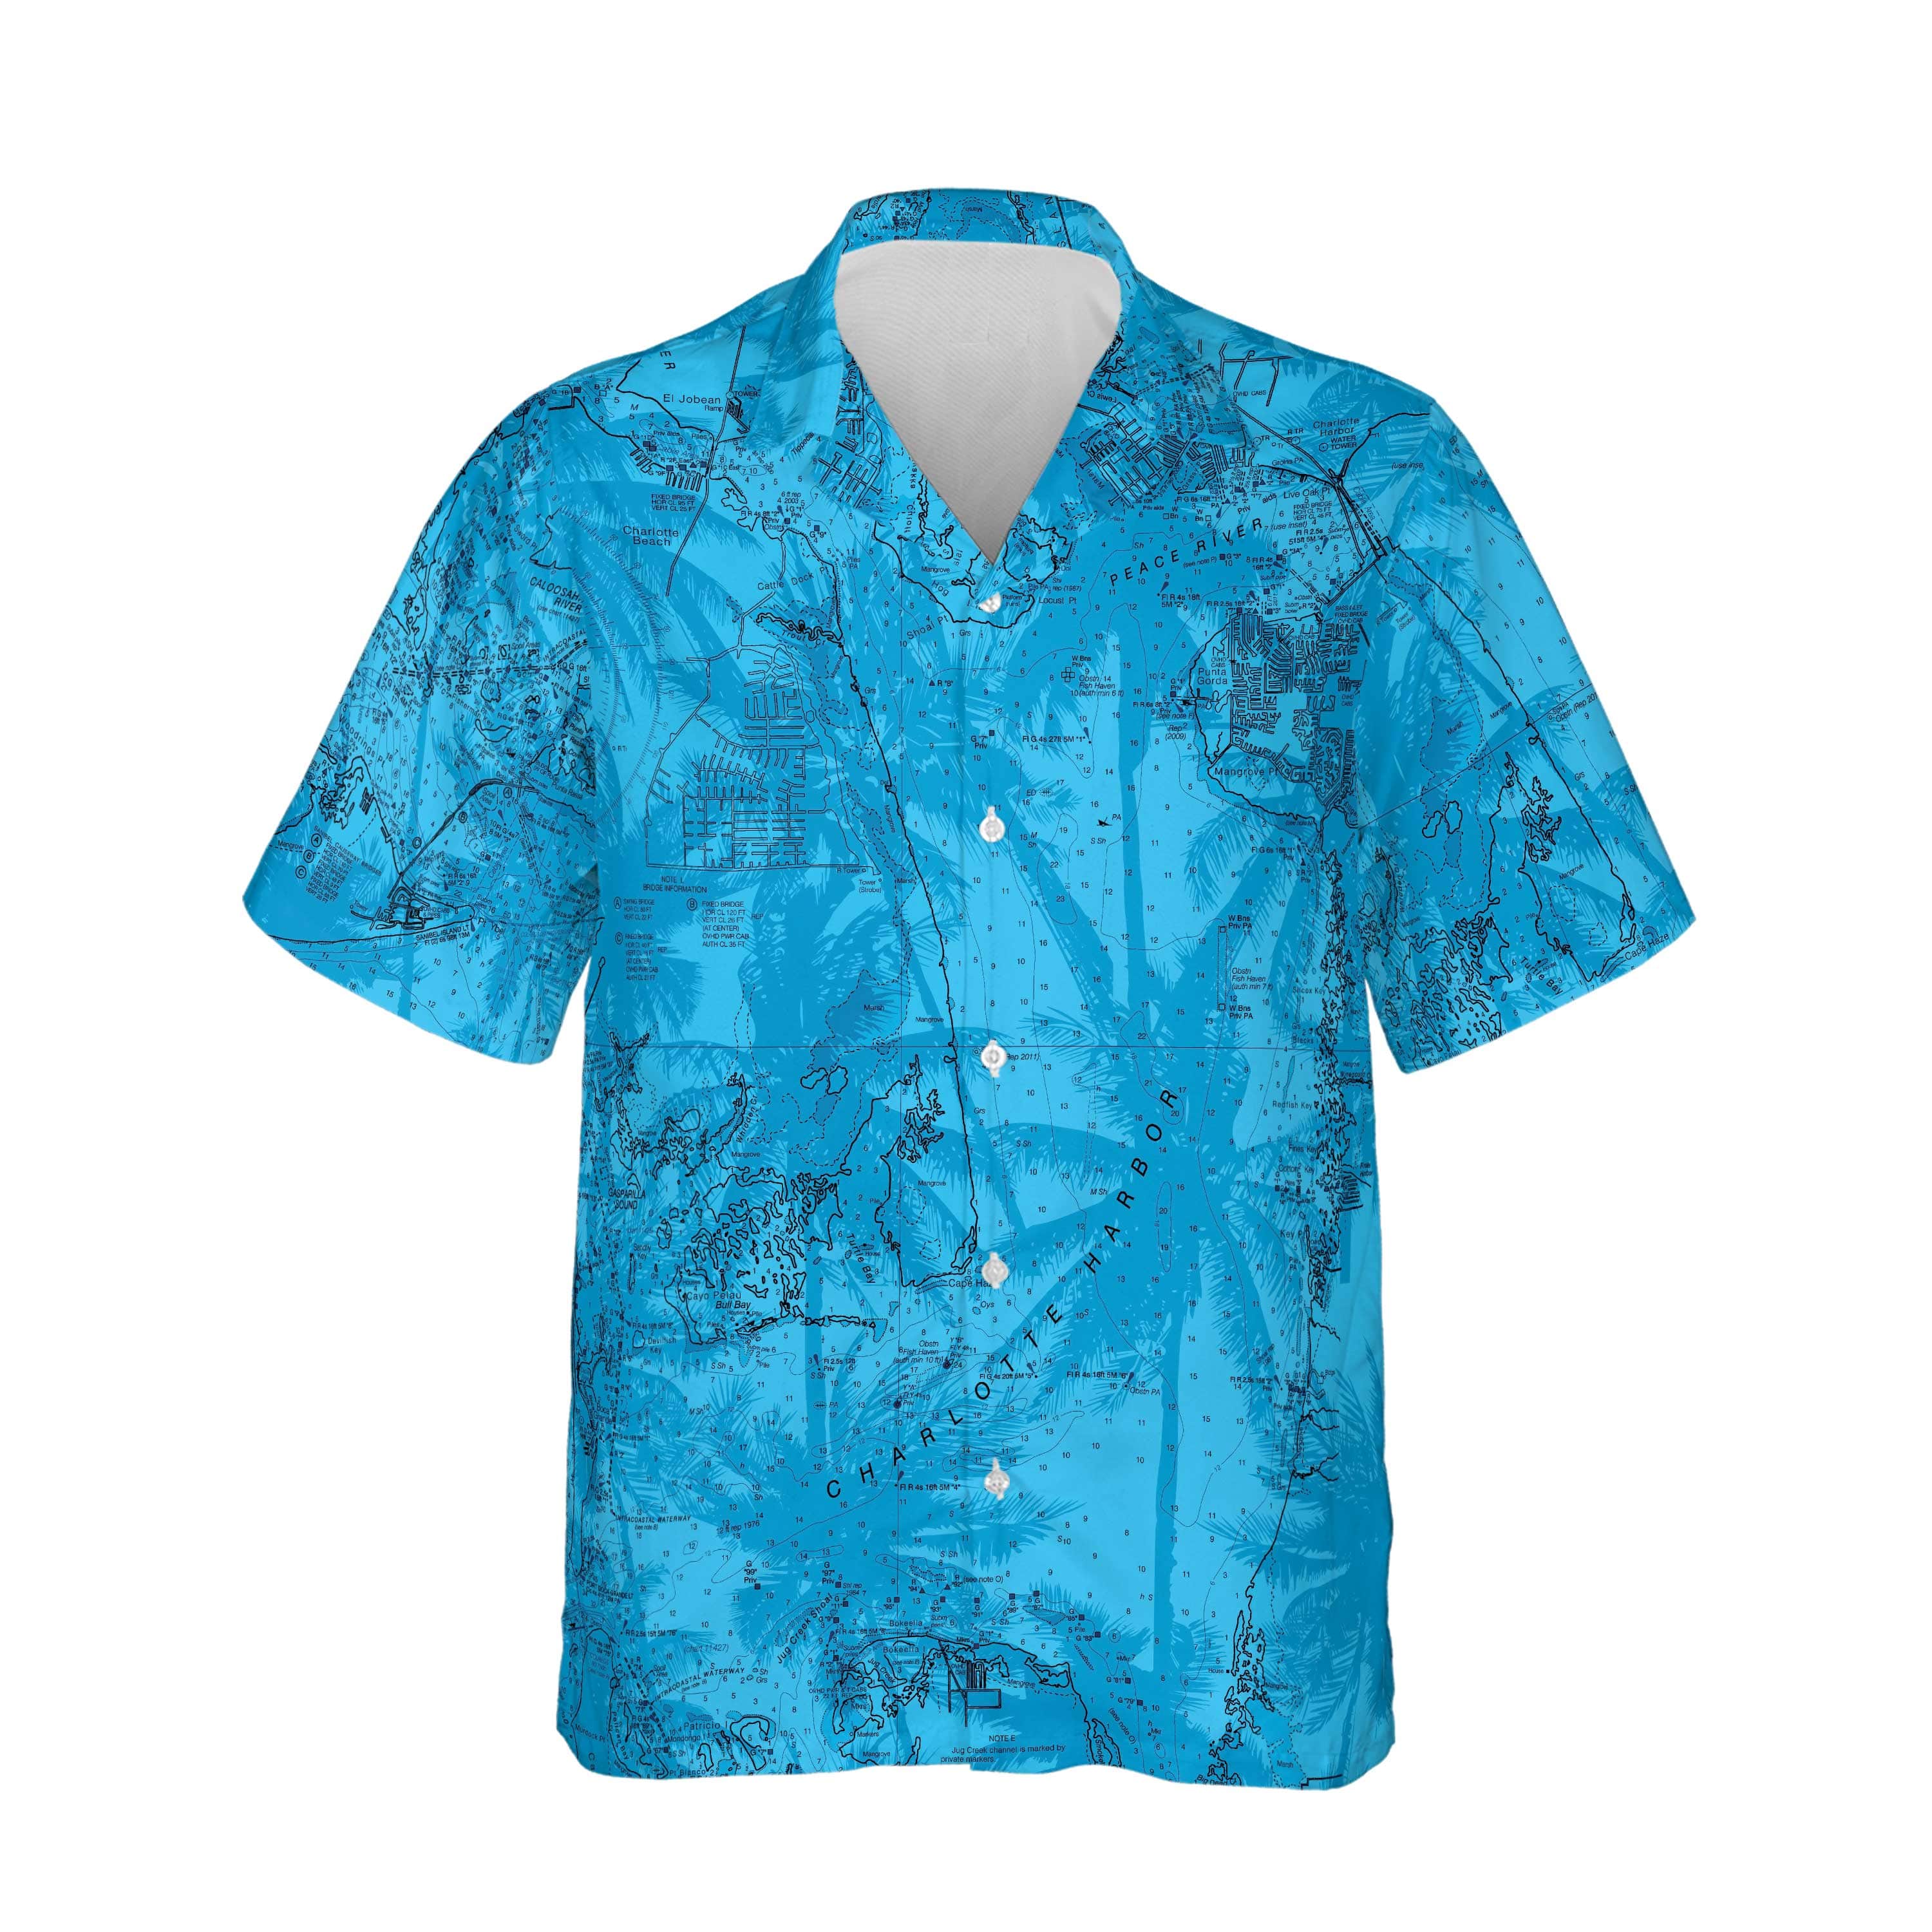 The Punta Gorda Blue Palms Camp Shirt